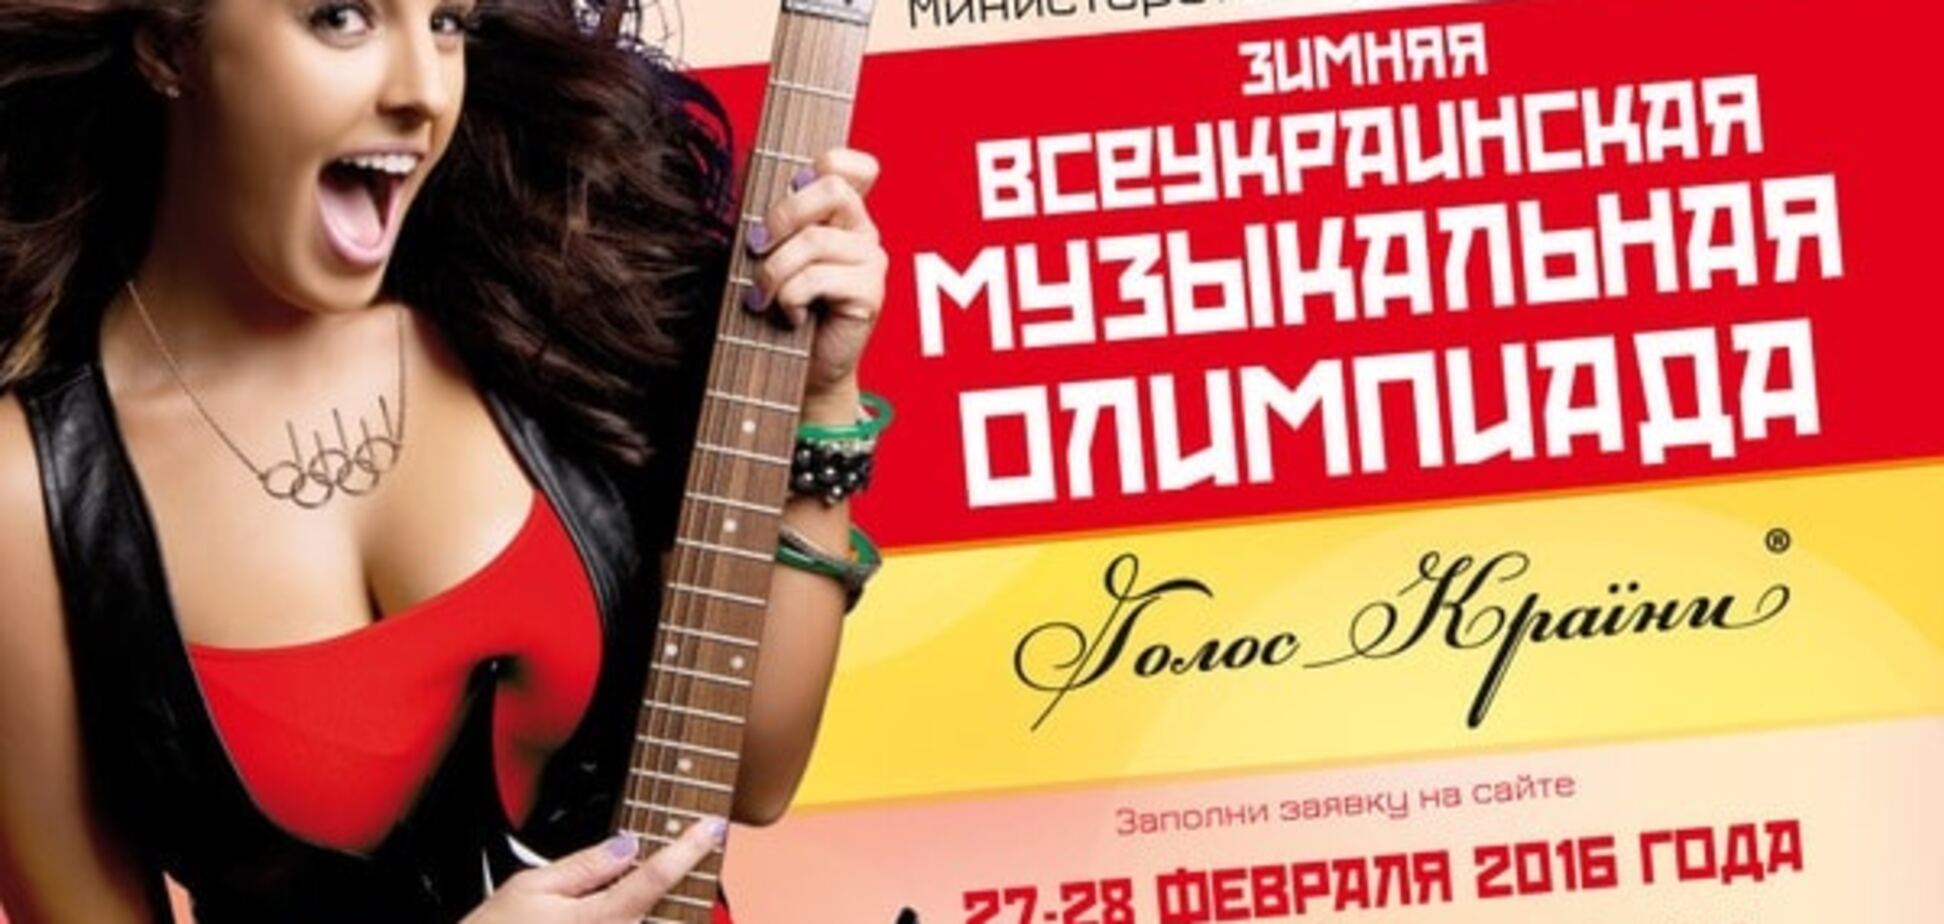 Всеукраинская музыкальная олимпиада 'Голос Країни' состоится в феврале 2016 года